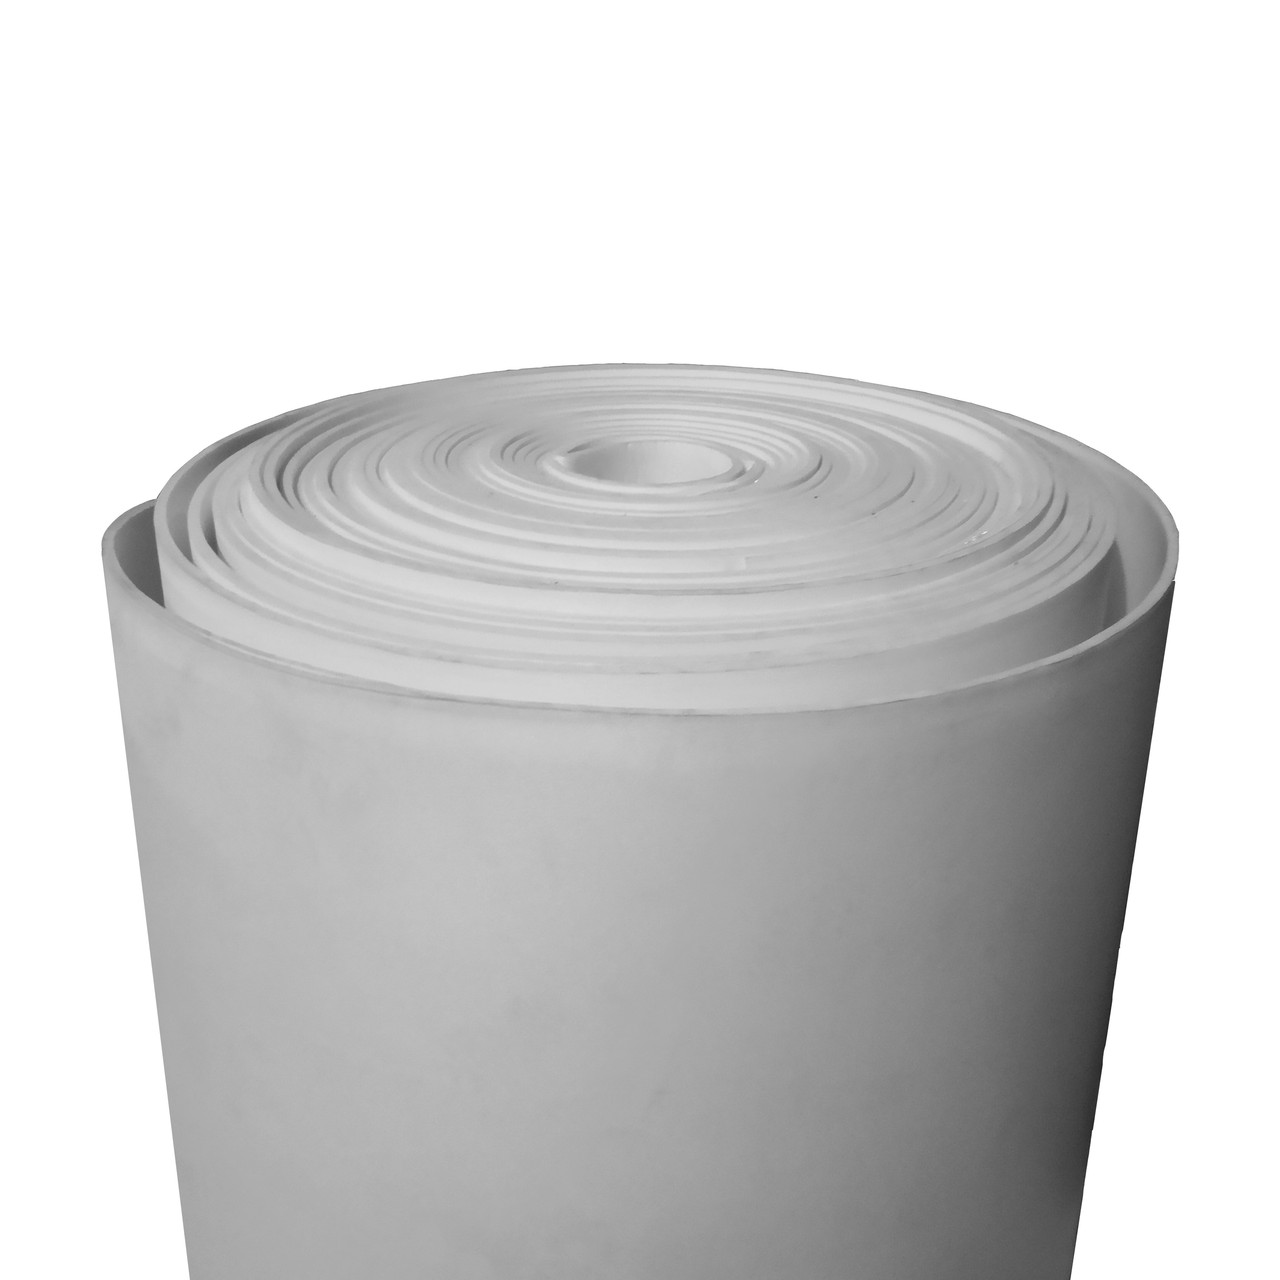 Фізично зшитий спінений поліетилен 5 мм 33 кг/м³ сірий